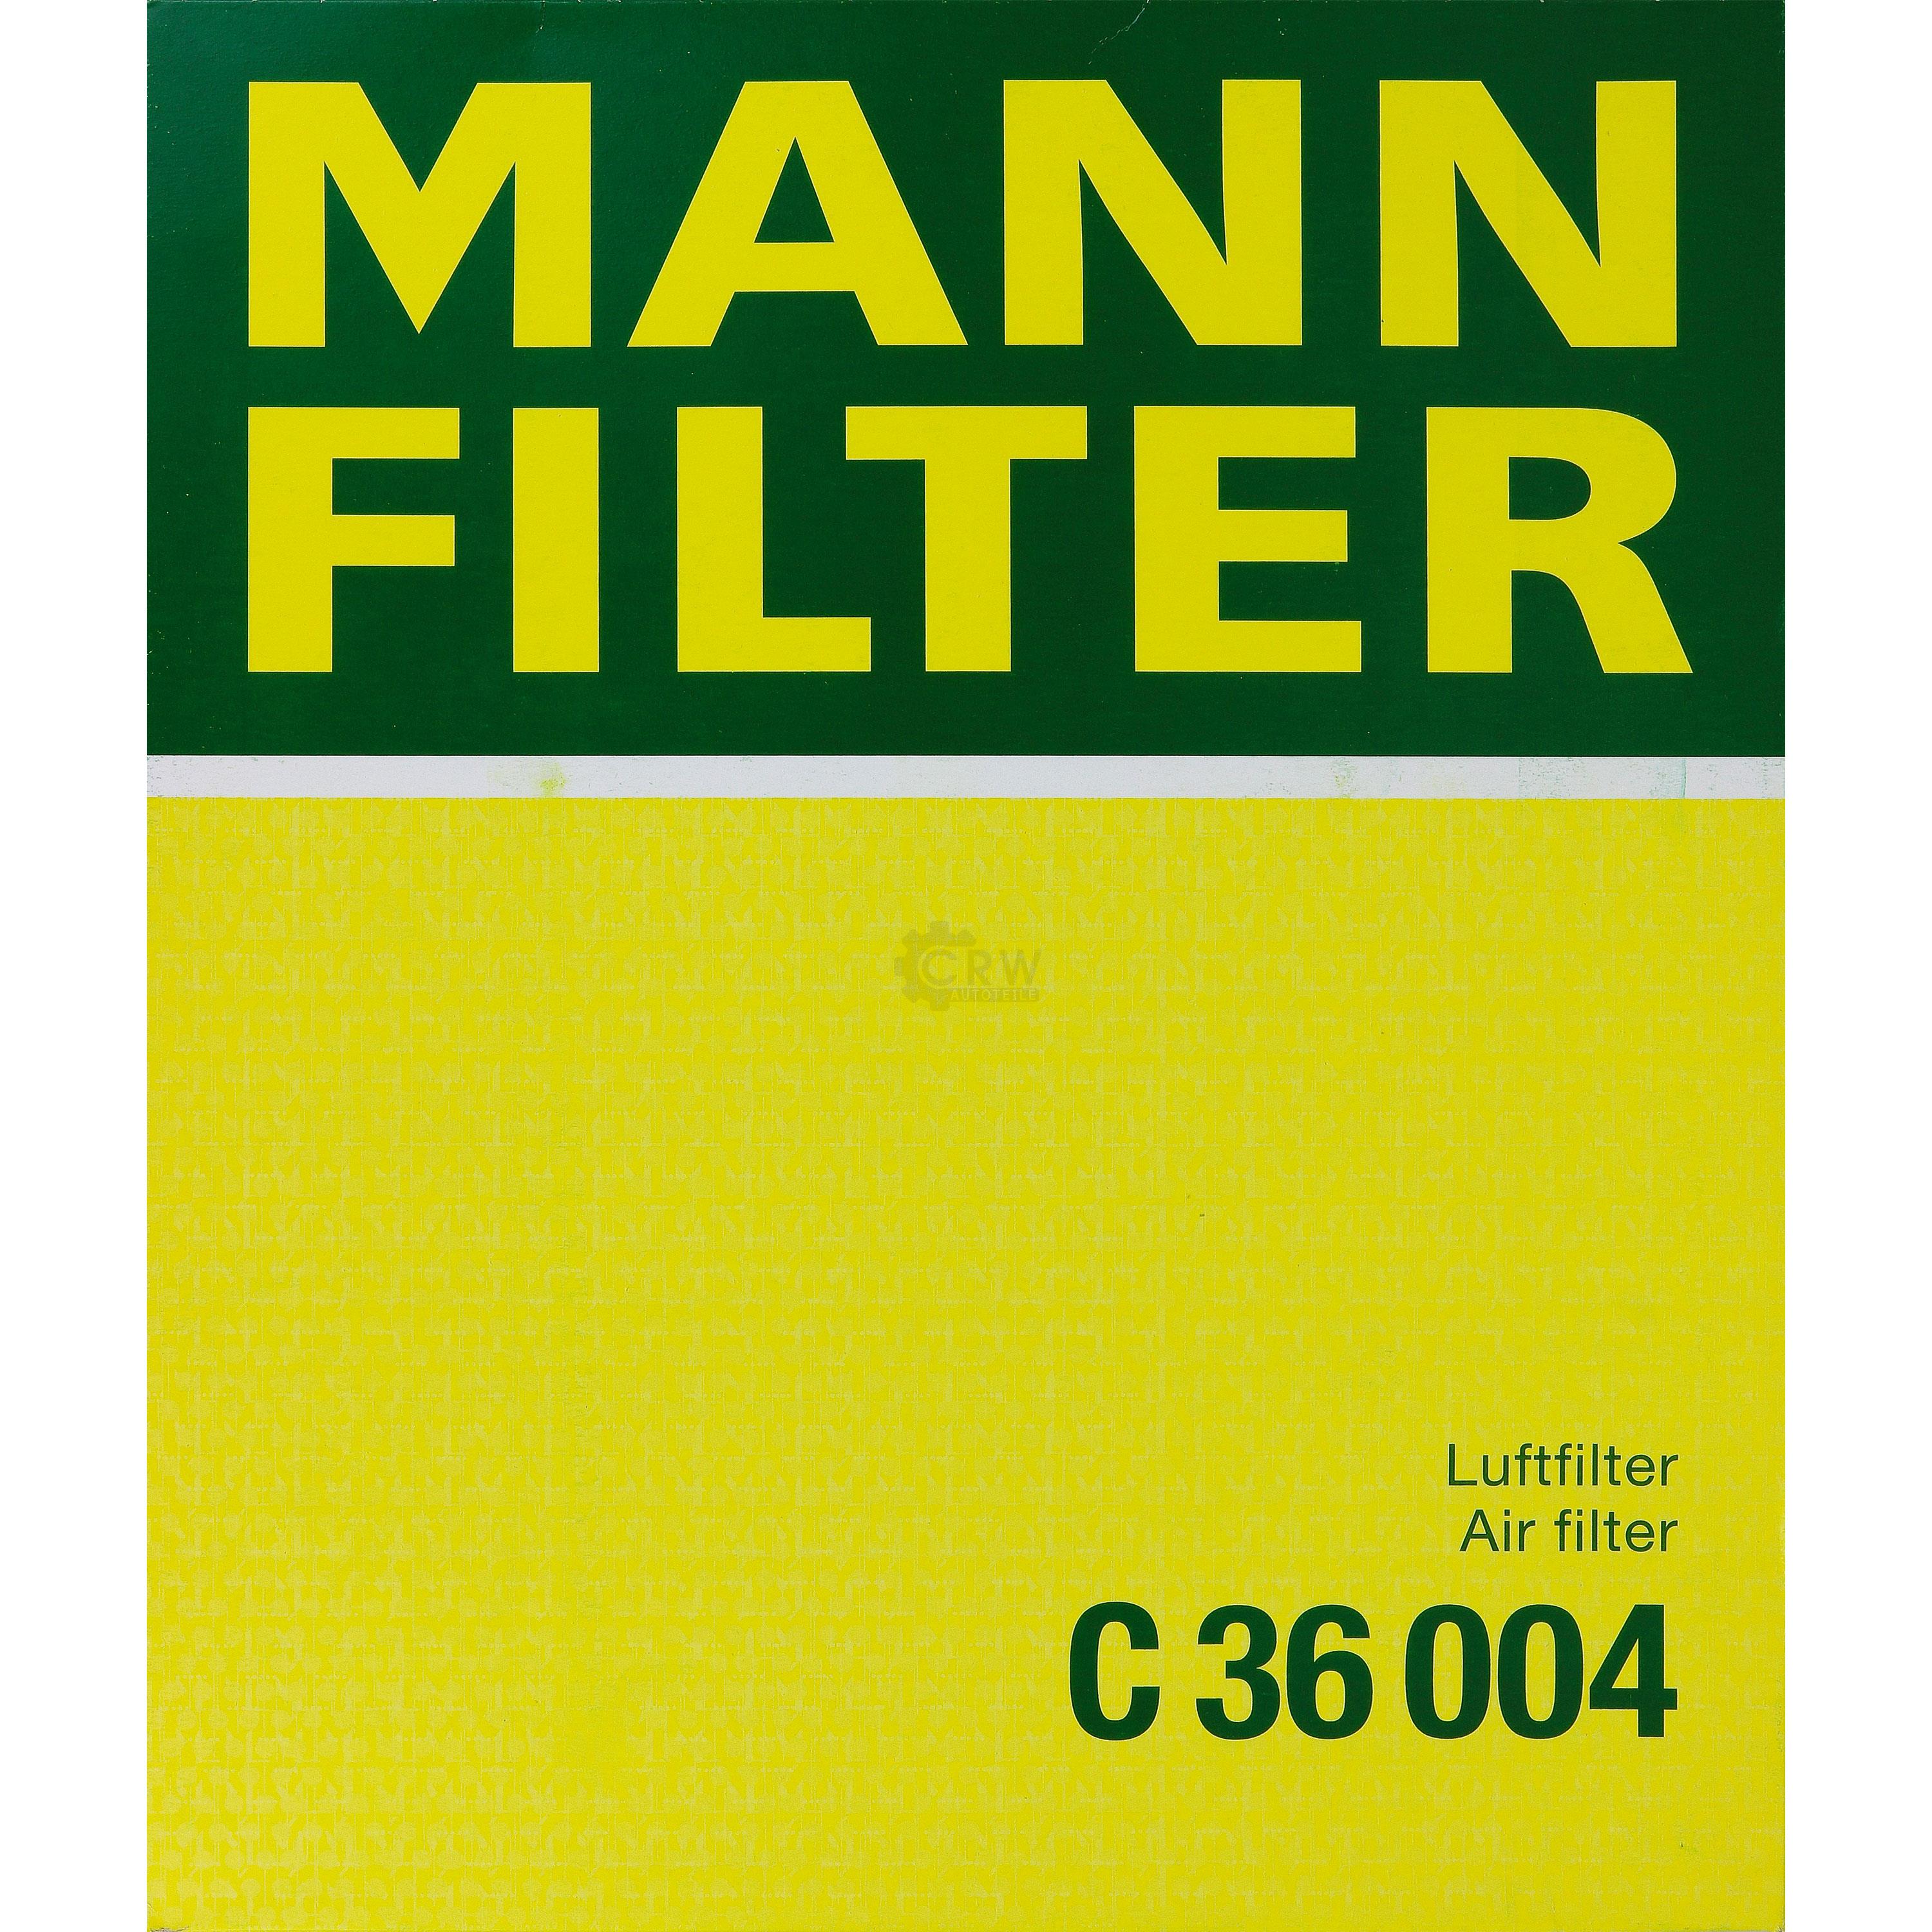 MANN-FILTER Luftfilter für BMW 3er Cabriolet E93 335i E92 E89 sDrive35i